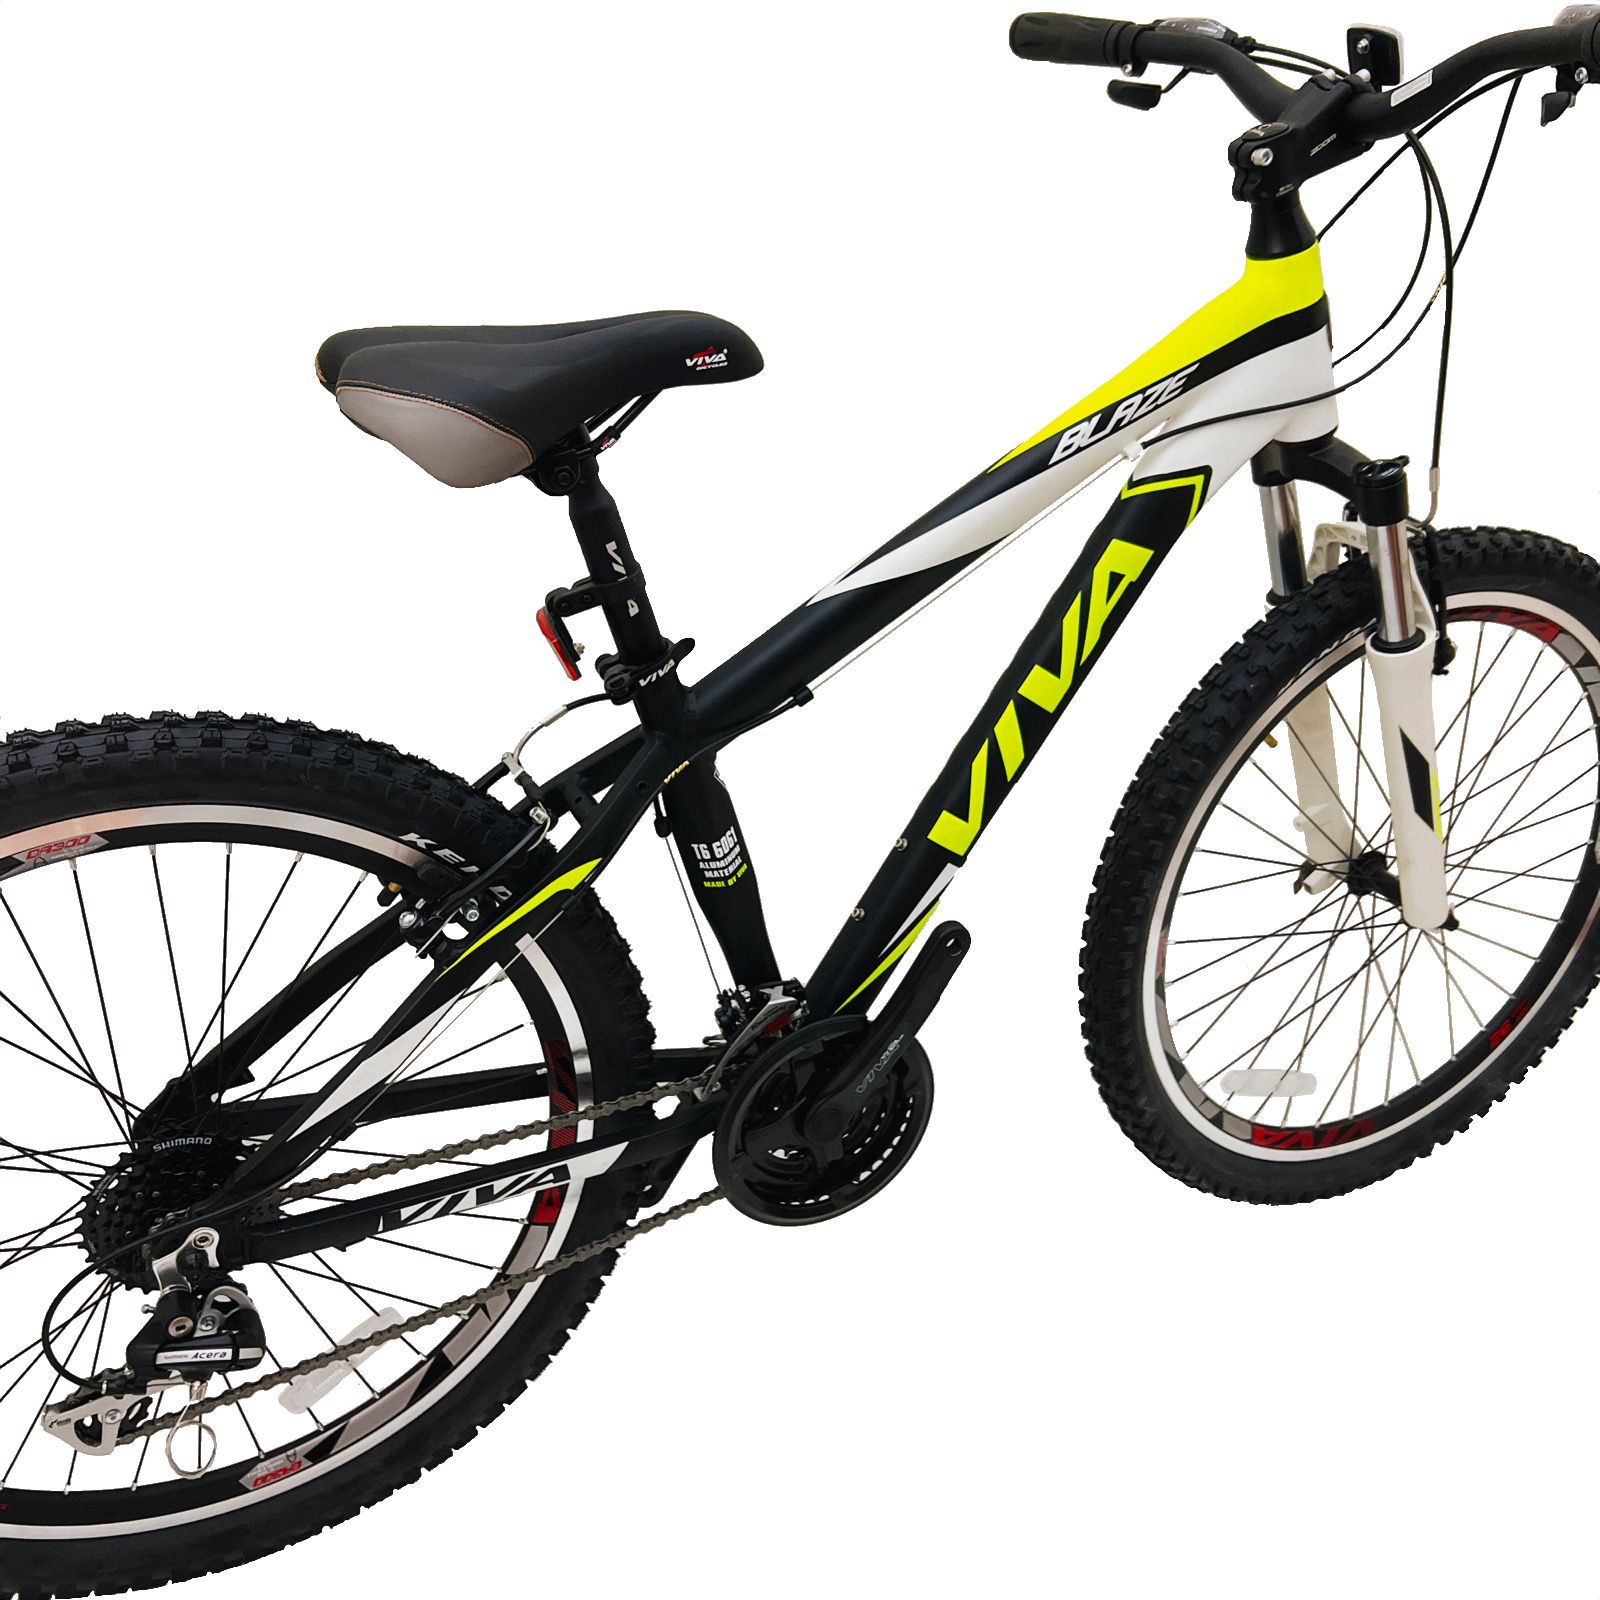 دوچرخه کوهستان ویوا مدل BLAZE کد 15 سایز 26 -  - 8